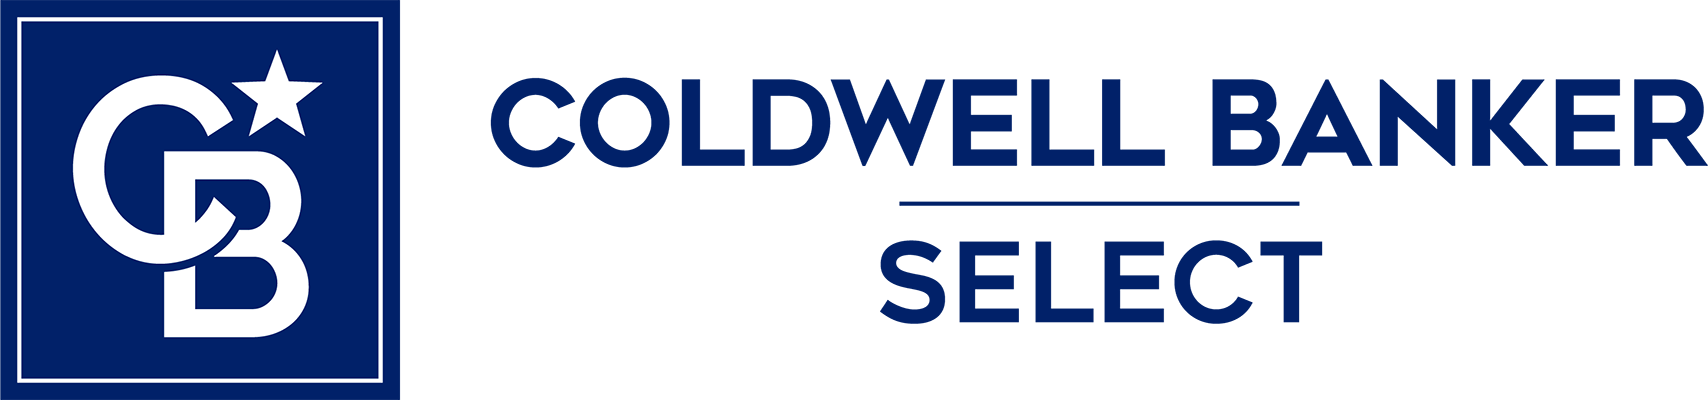 Mieko Zarubin - Coldwell Banker Select Logo